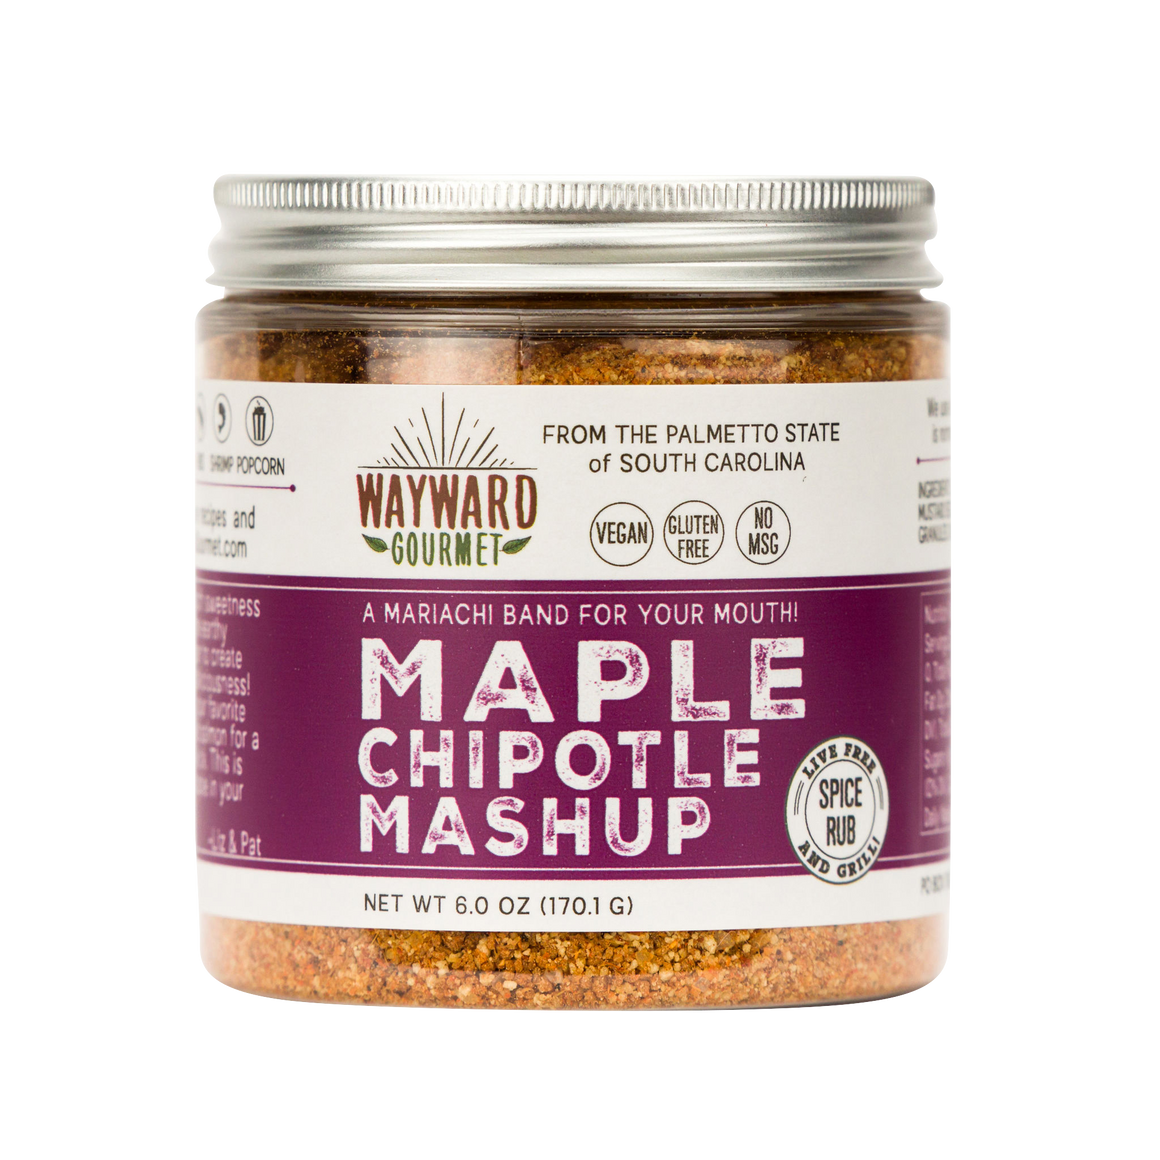 Maple Chipotle Mashup